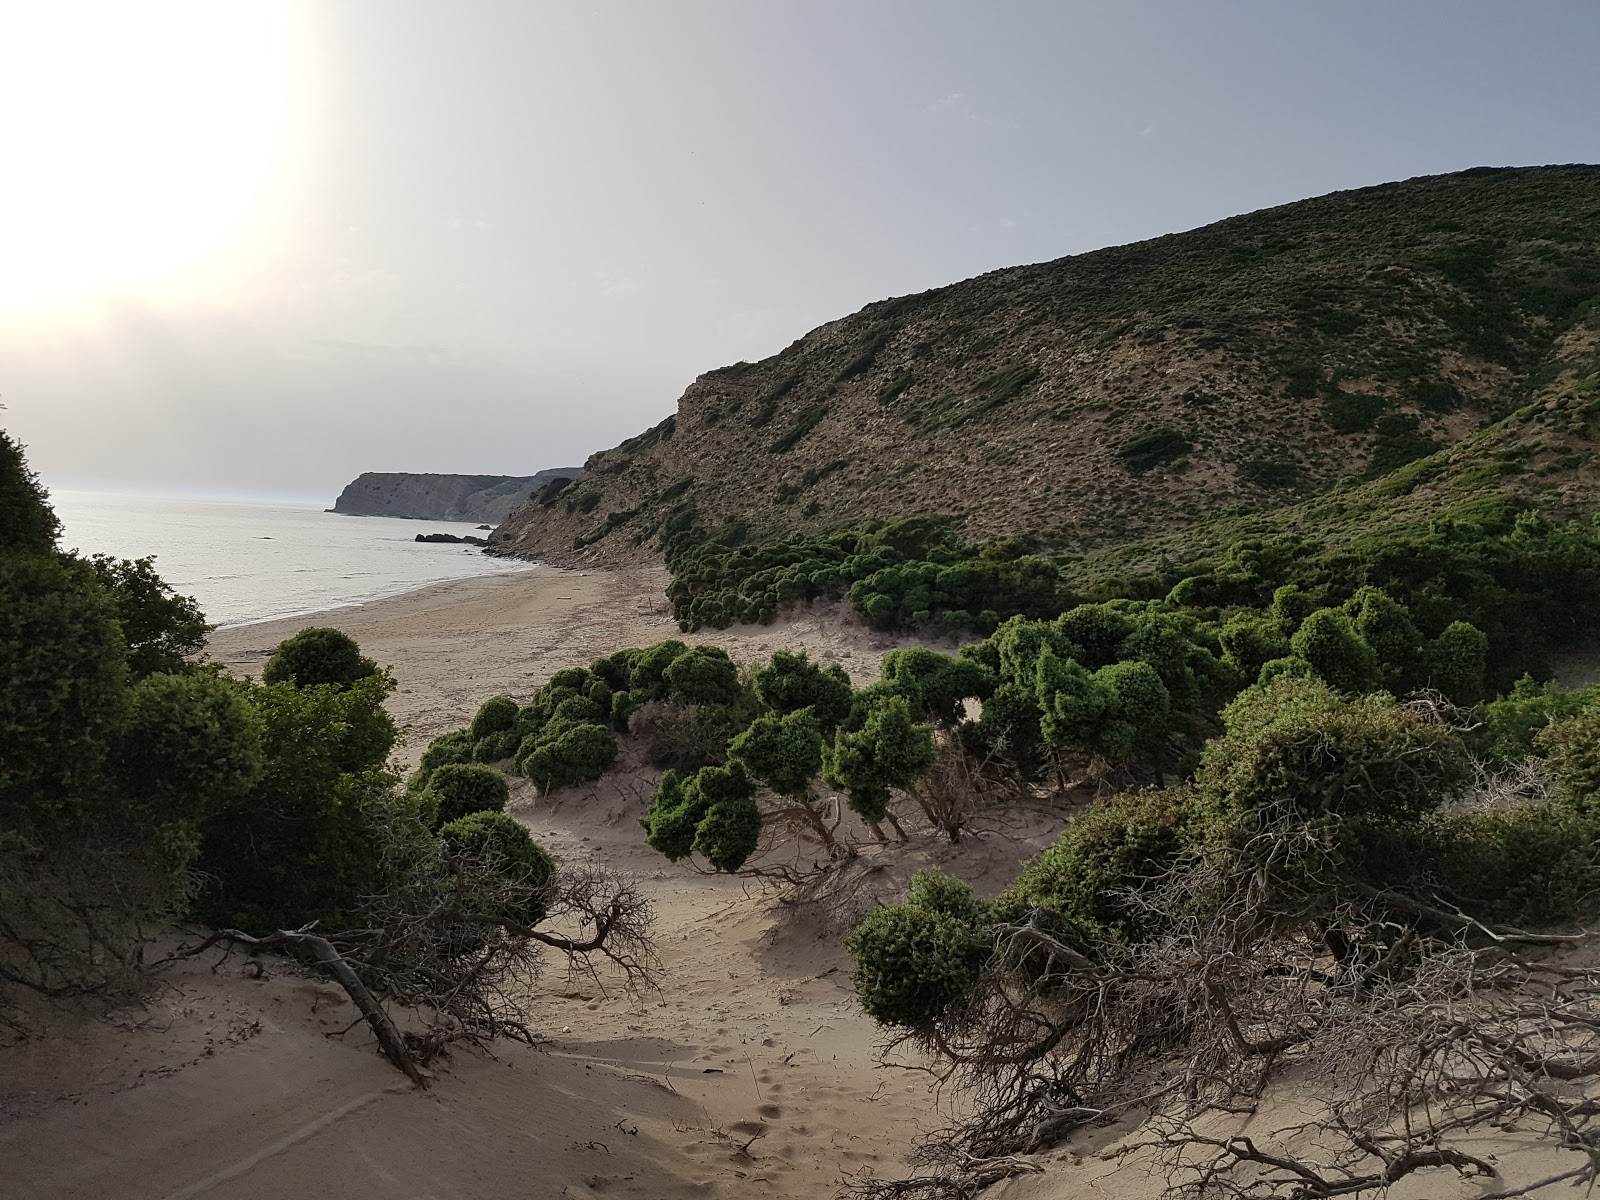 Fotografija Mystic beach nahaja se v naravnem okolju